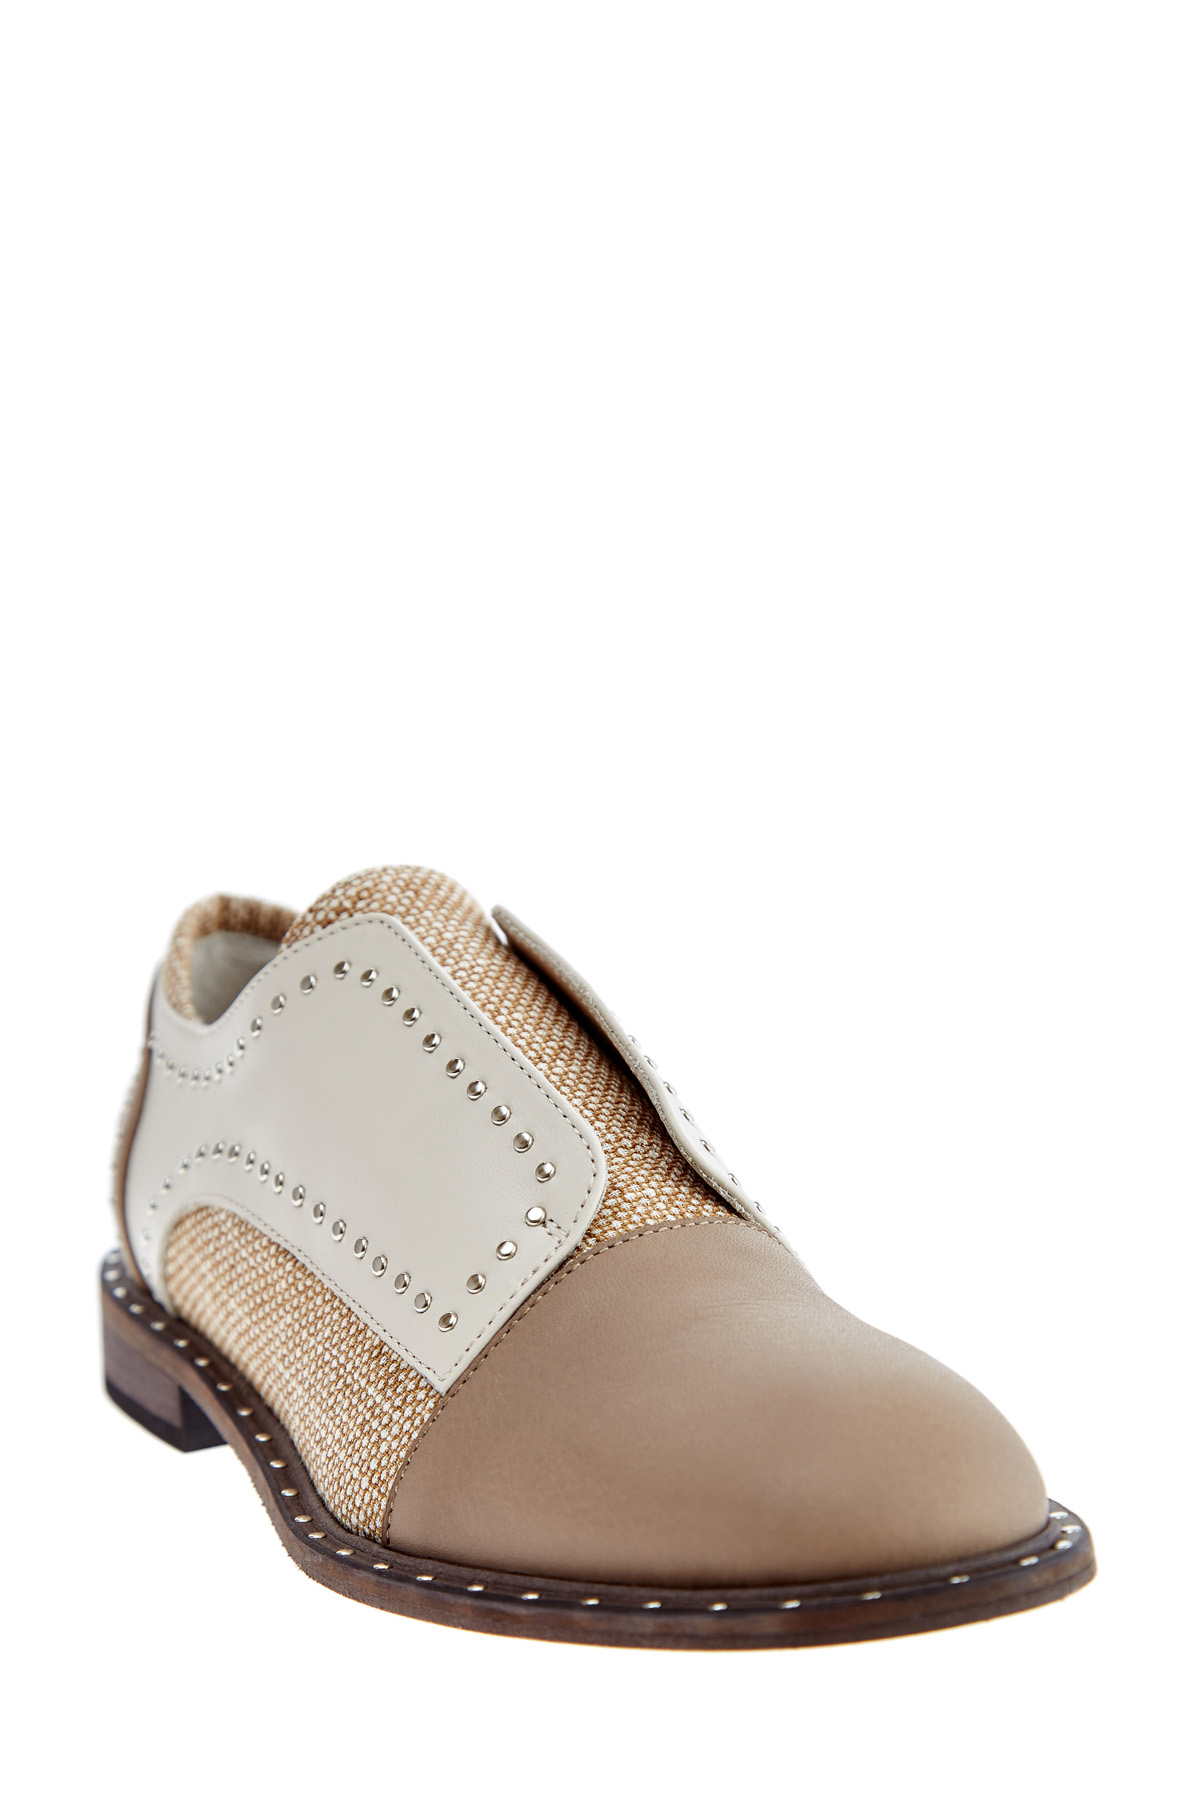 Ботинки из льна и кожи с отделкой заклепками в стиле вестерн LORENA ANTONIAZZI, цвет бежевый, размер 40 - фото 3